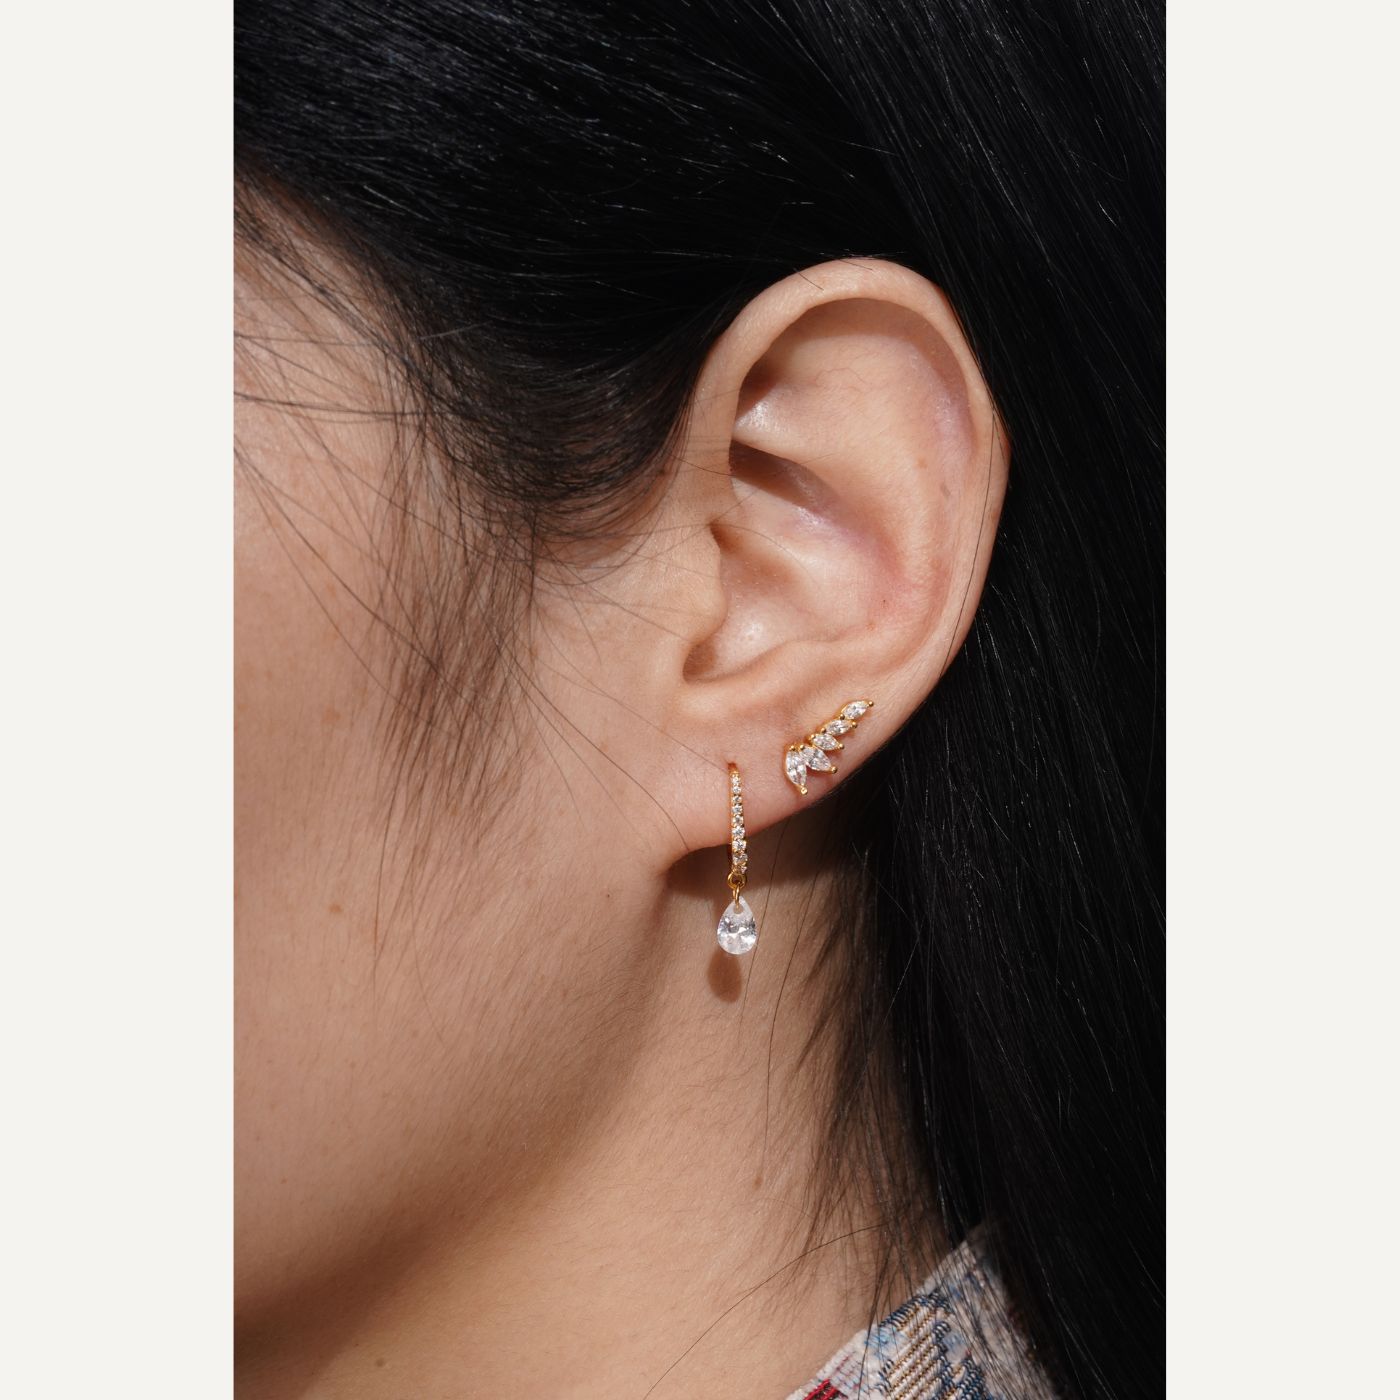 boucles d'oreilles dorées, mini créole avec pierre, boucle d'oreille grimpante